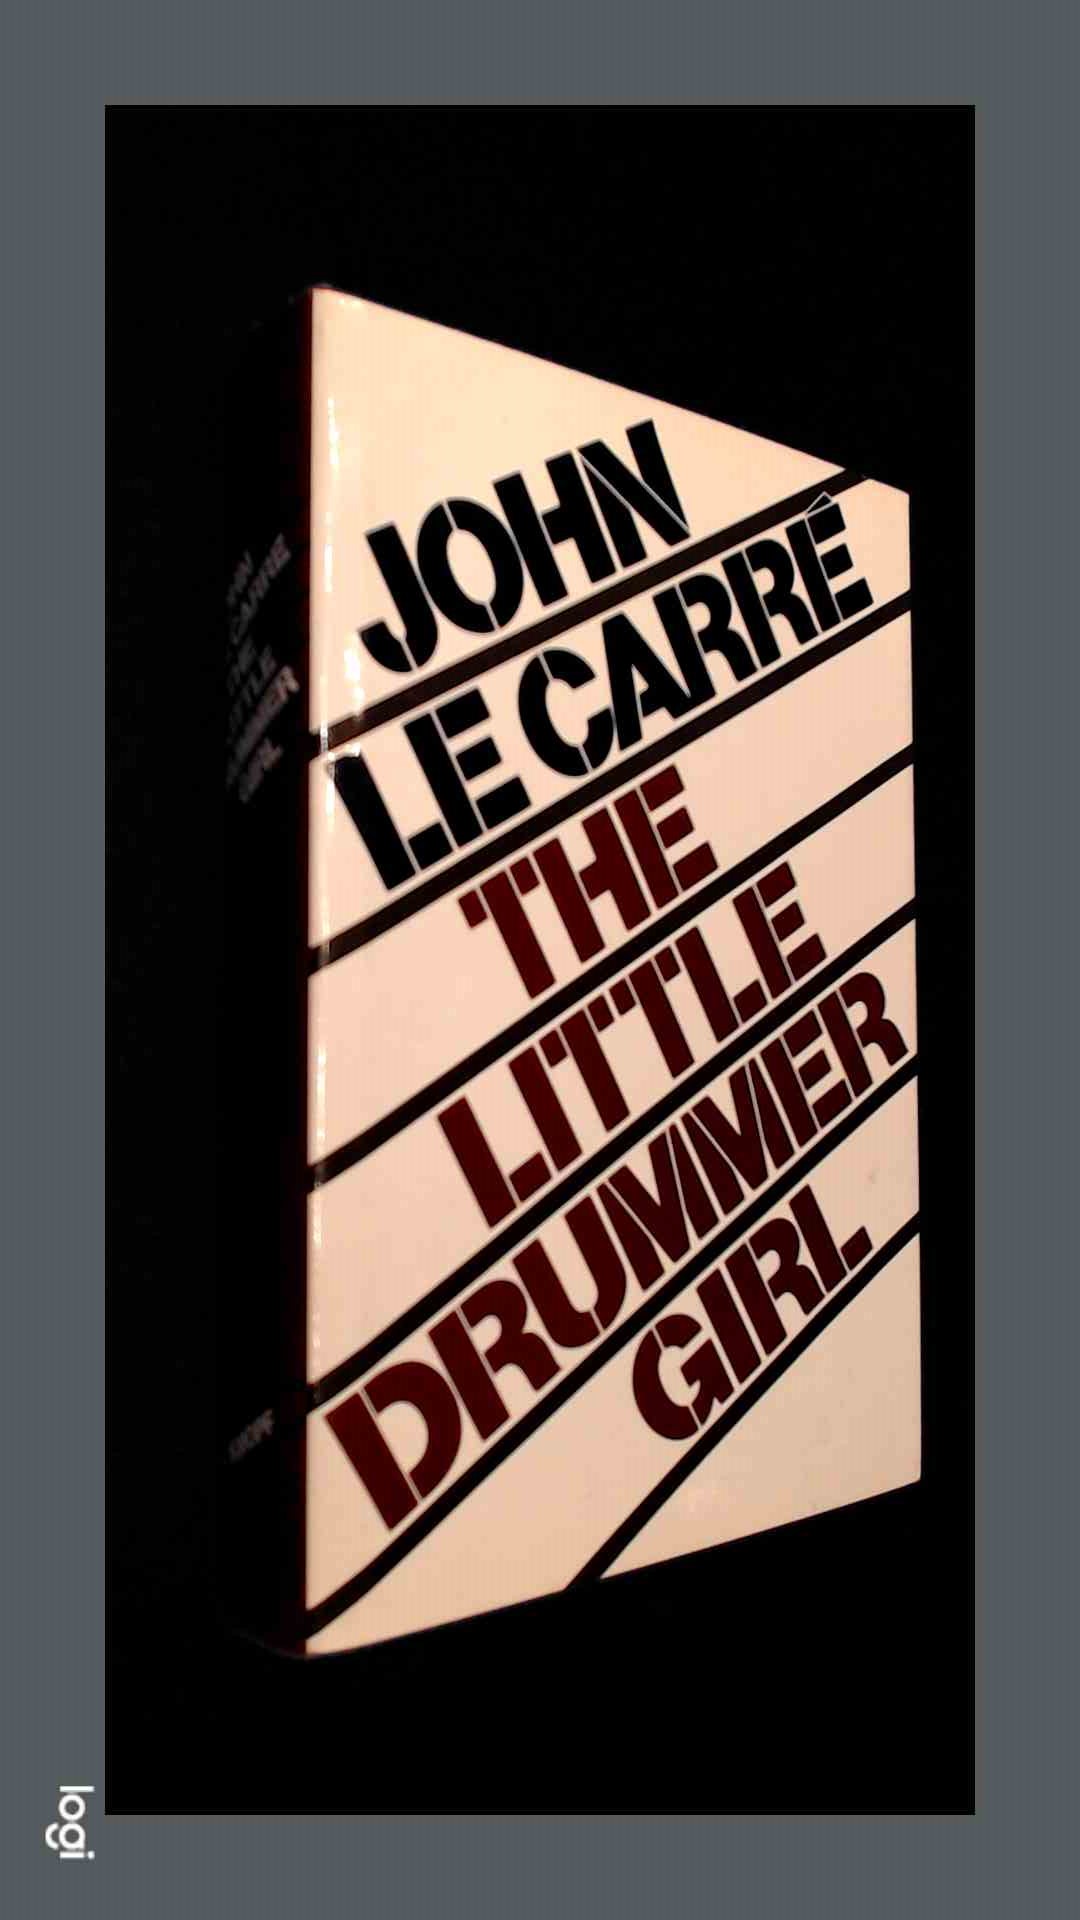 CARRE, JOHN LE - The little drummer girl